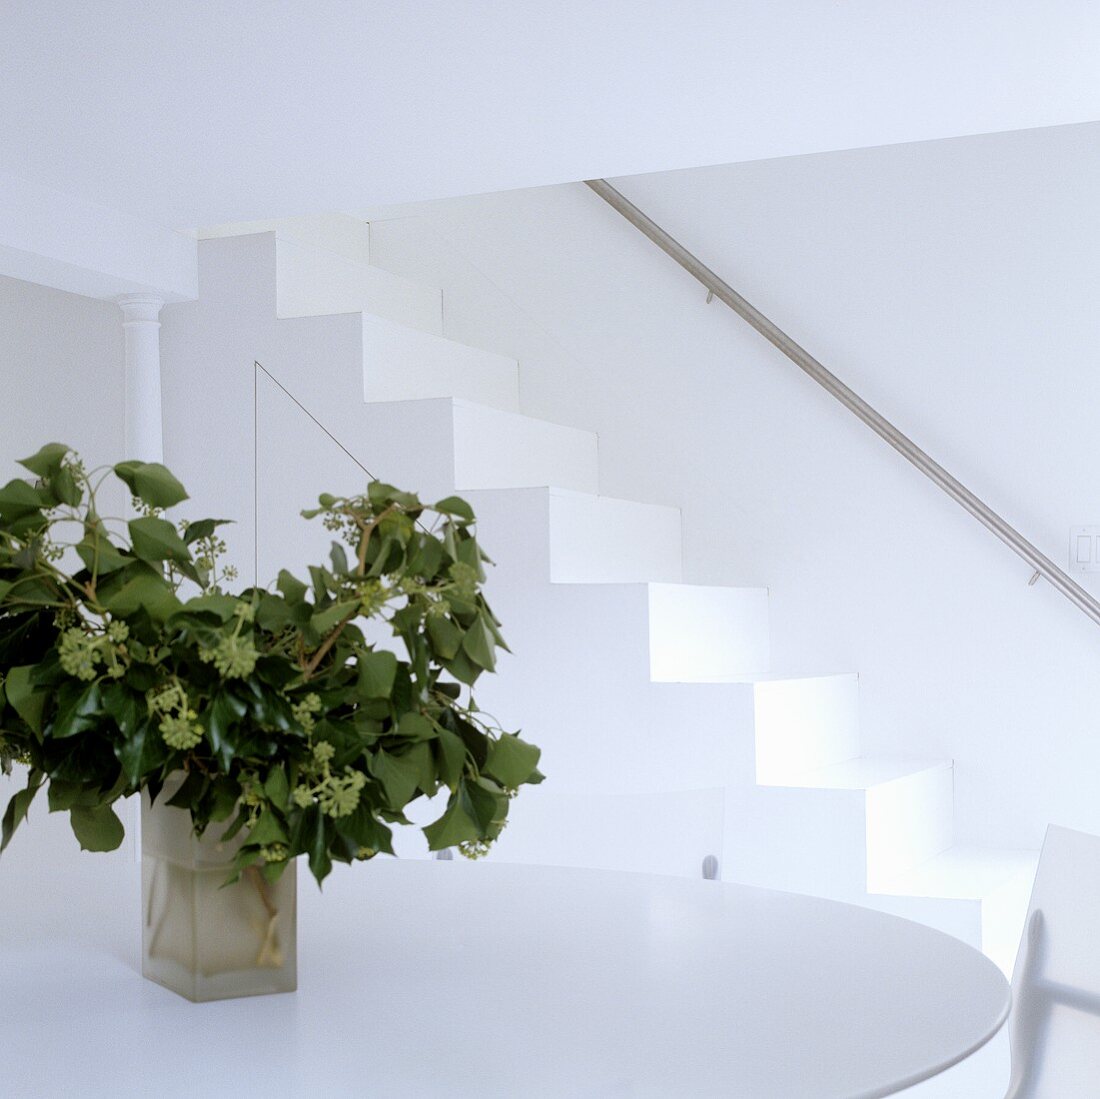 Weisser Raum mit Vase auf Tisch und Treppe mit Edelstahlhandlauf